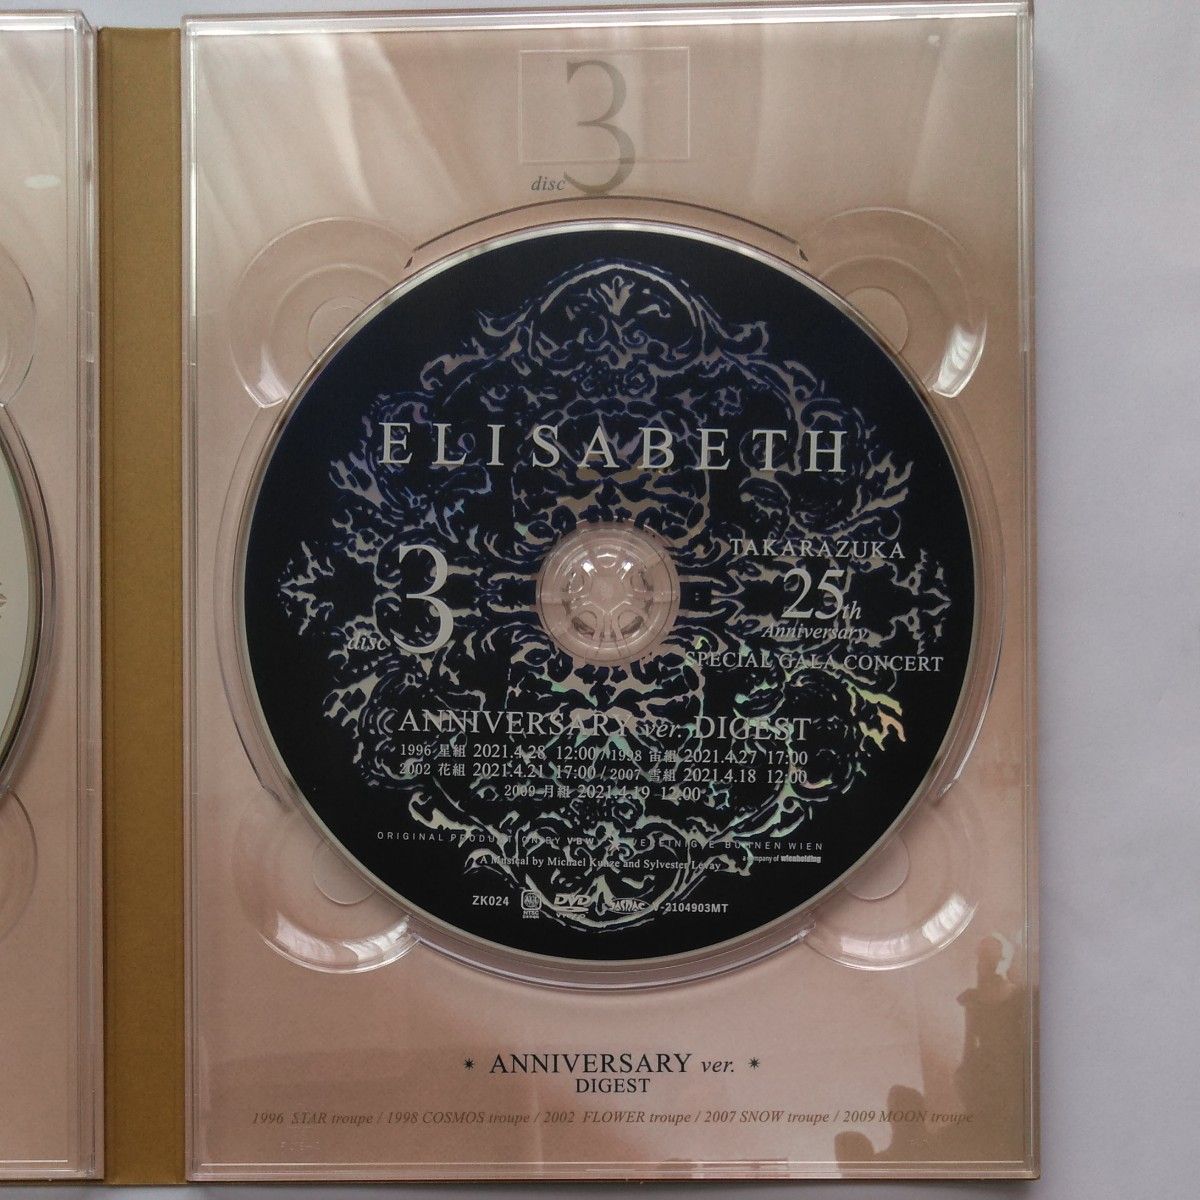 明日海りお「エリザベート TAKARAZUKA25周年記念 スペシャル･ガラ･コンサート」 DVD 特典写真3枚付き